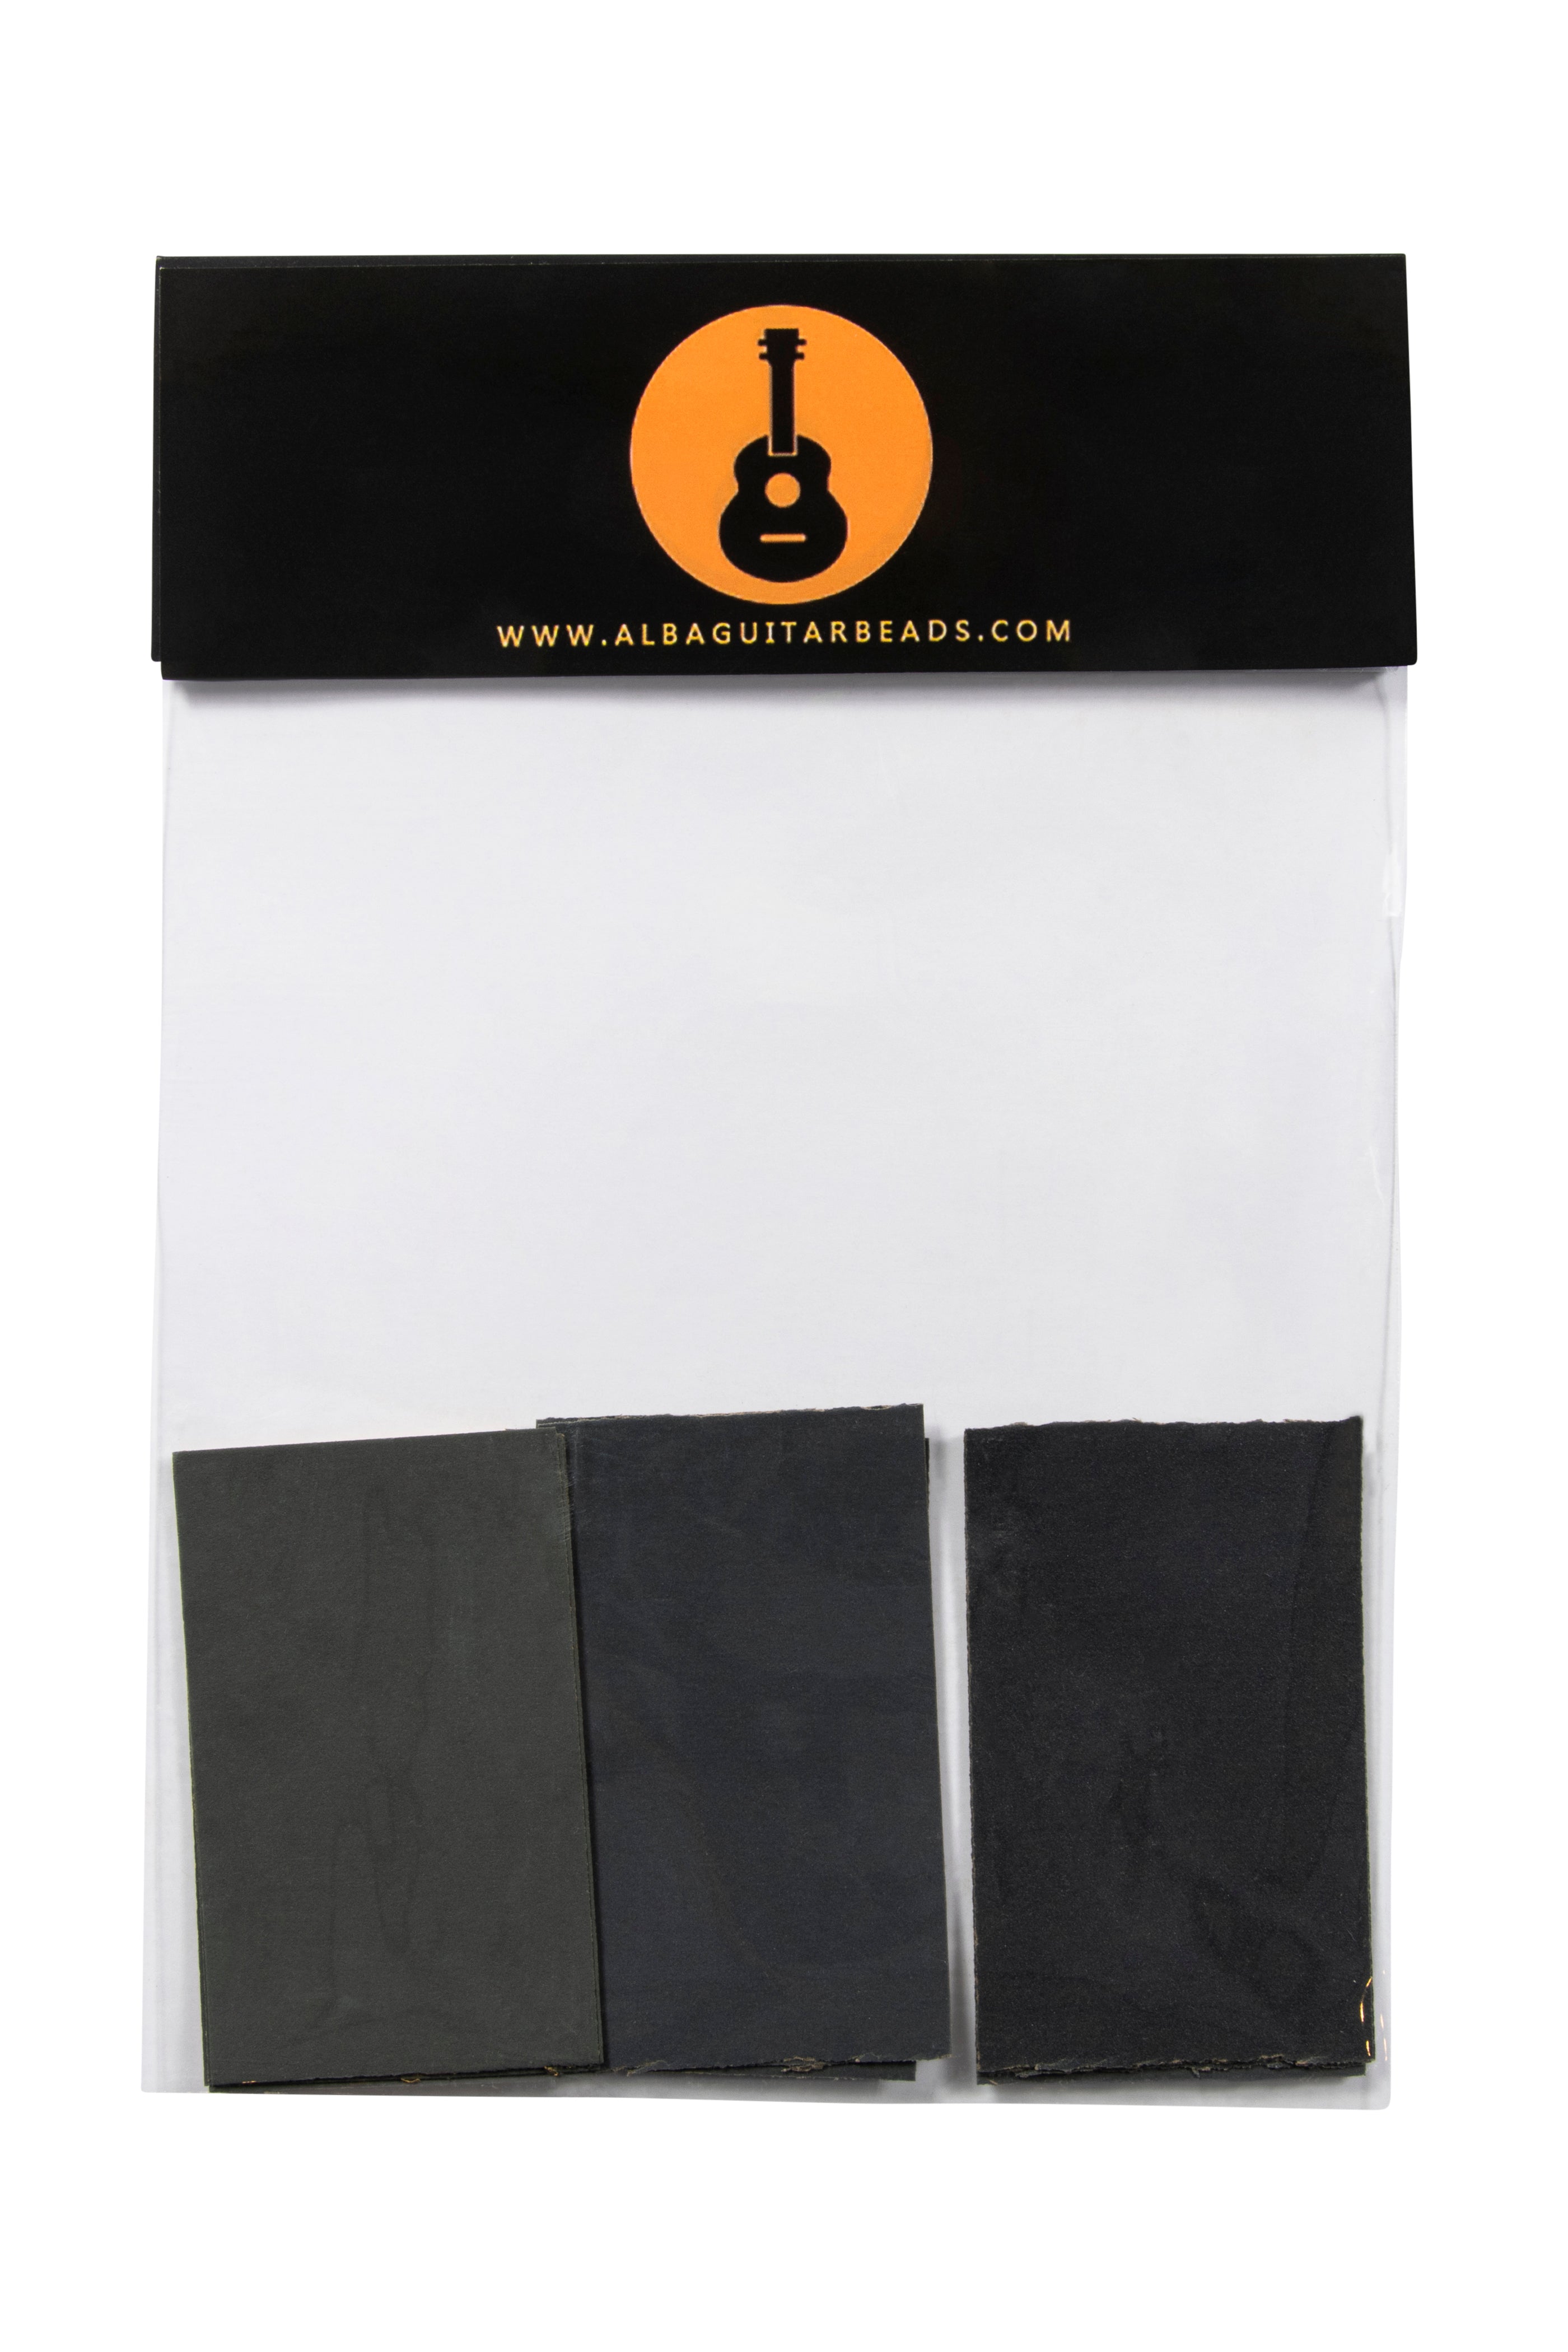 Alba Guitar Beads set di carte vetrate per la cura delle unghie per chitarristi